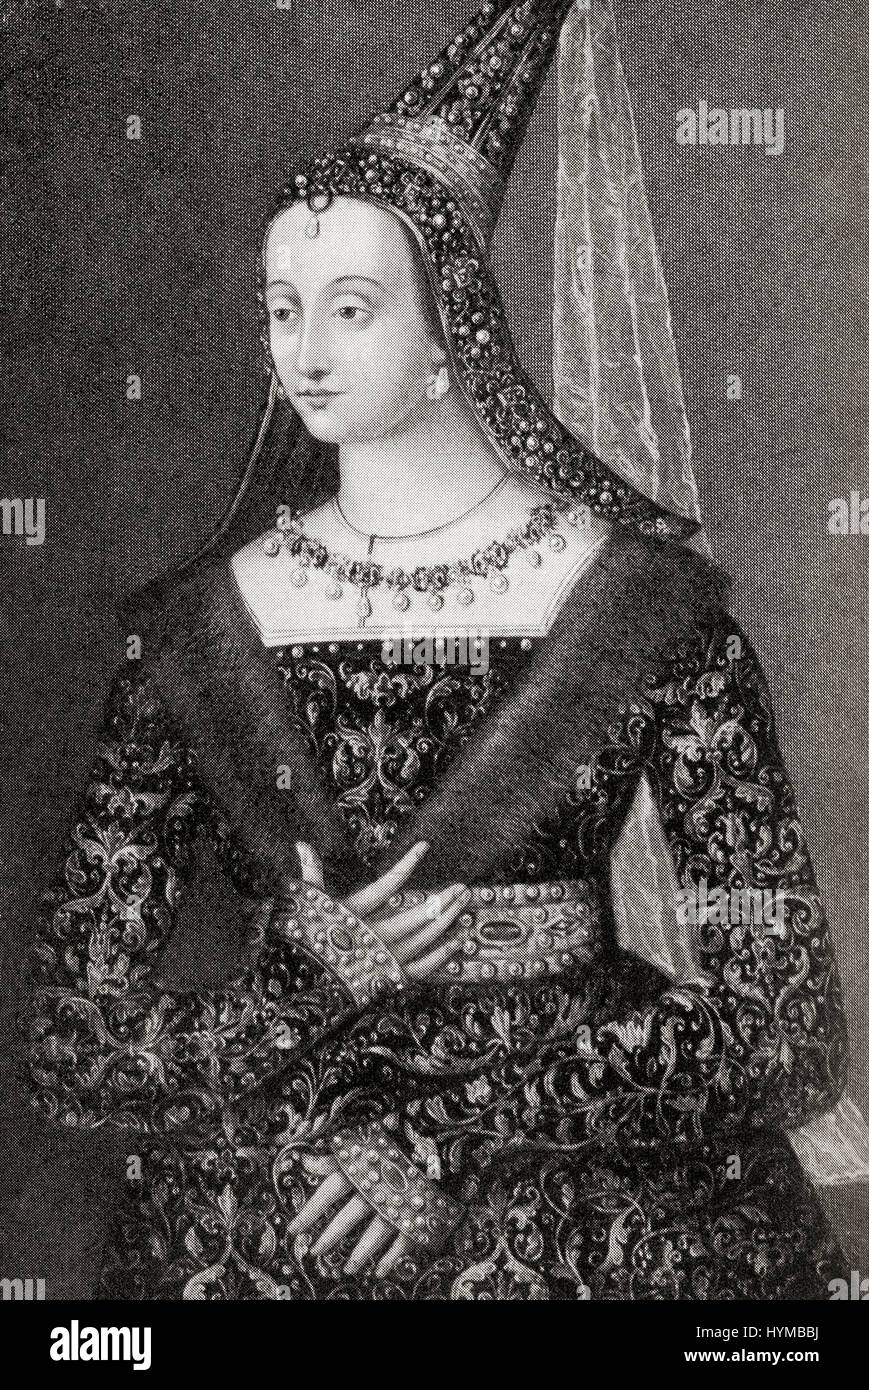 Margarete von Schottland, 1424 – 1445.  Prinzessin von Schottland und der Dauphine von Frankreich, die Tochter von König James i. von Schottland und Königin Joan Beaufort.  Hutchinson Geschichte der Nationen veröffentlichte 1915. Stockfoto